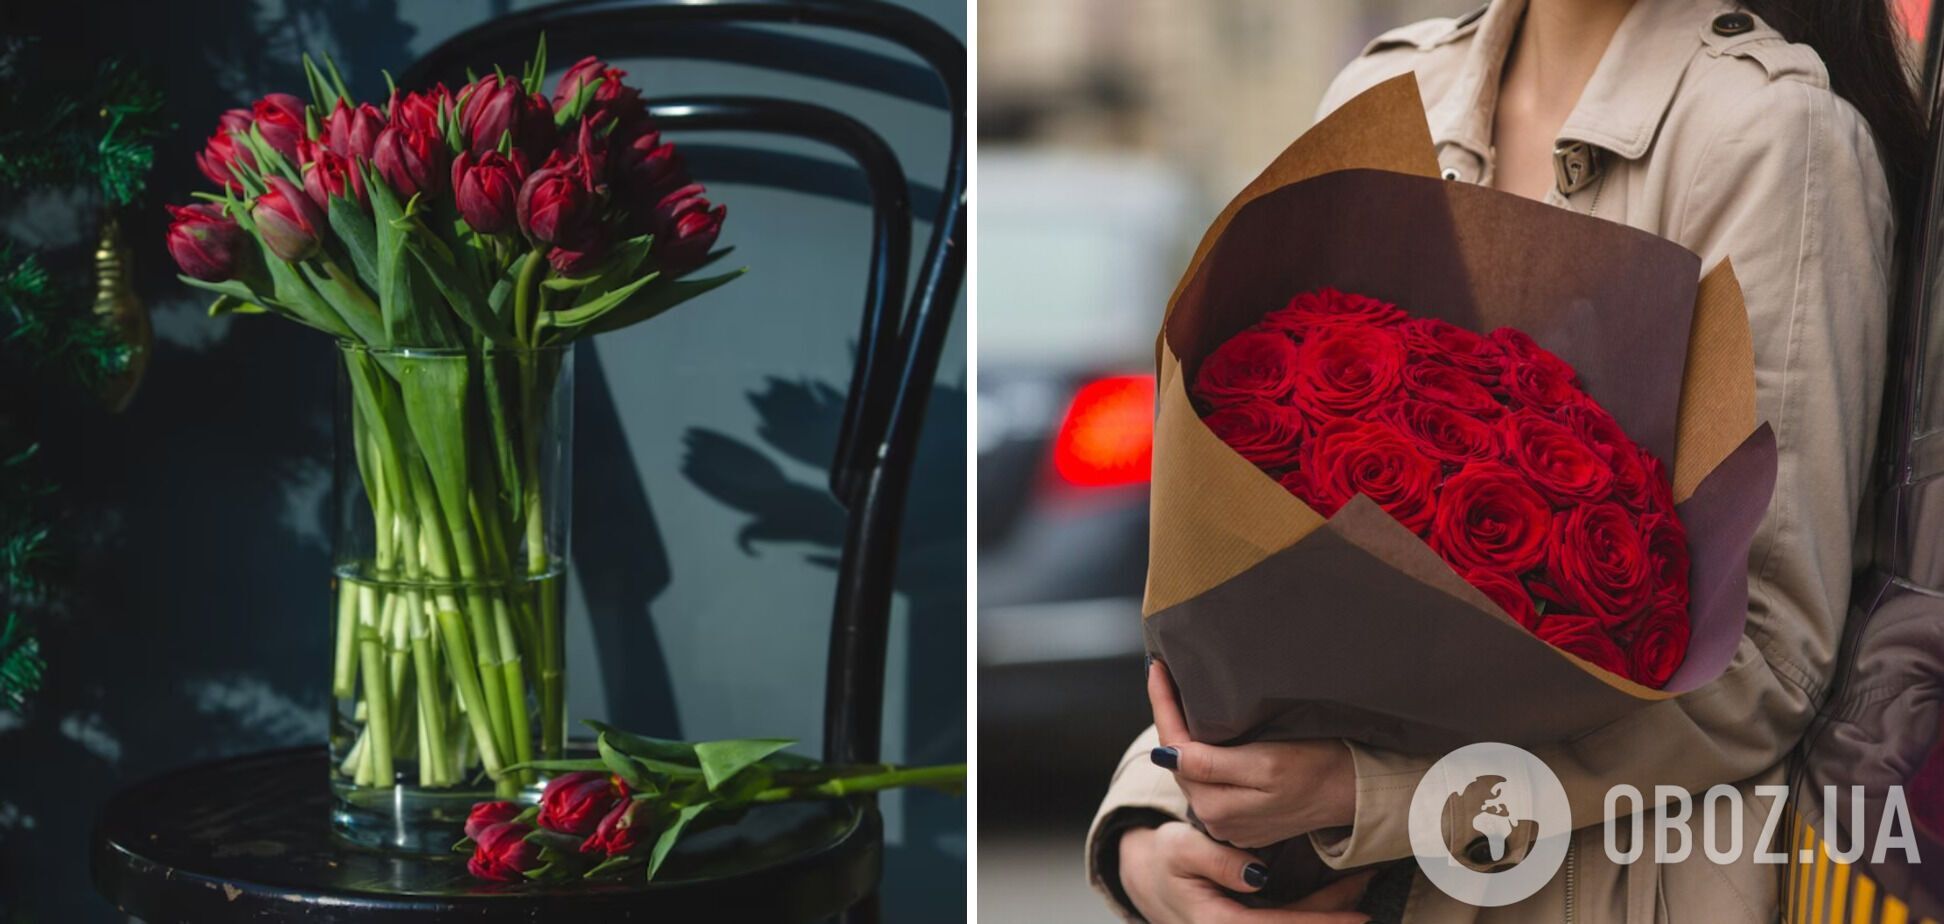 Які квіти подарувати коханій, мамі, сестрі на свято весни: найвдаліші букети